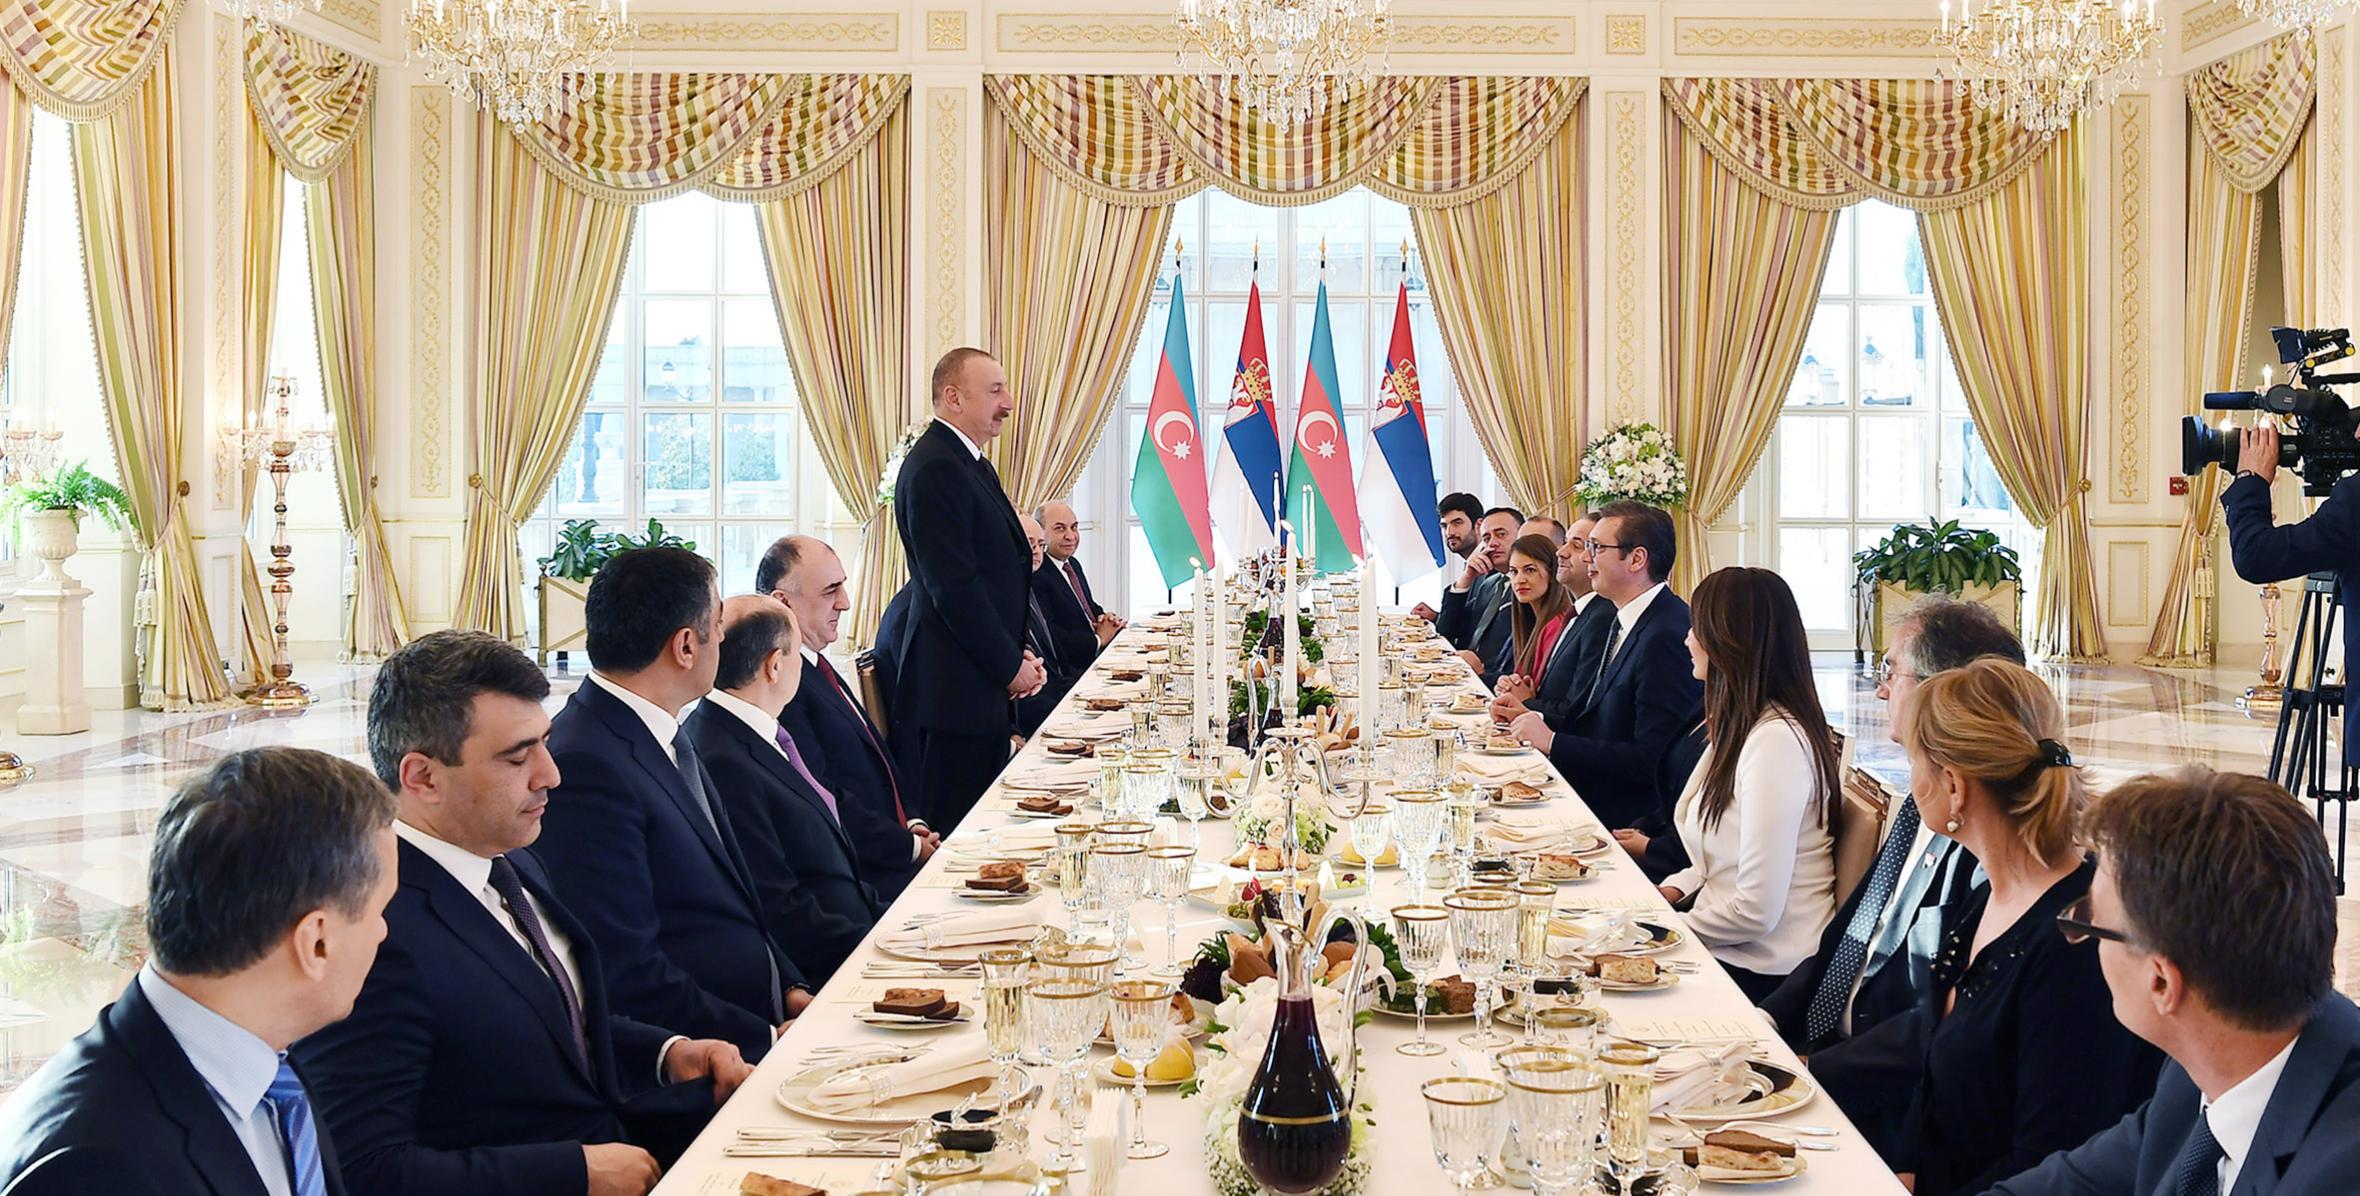 От имени Ильхама Алиева был устроен официальный прием в честь находящегося с официальным визитом в нашей стране Президента Республики Сербия Александра Вучича